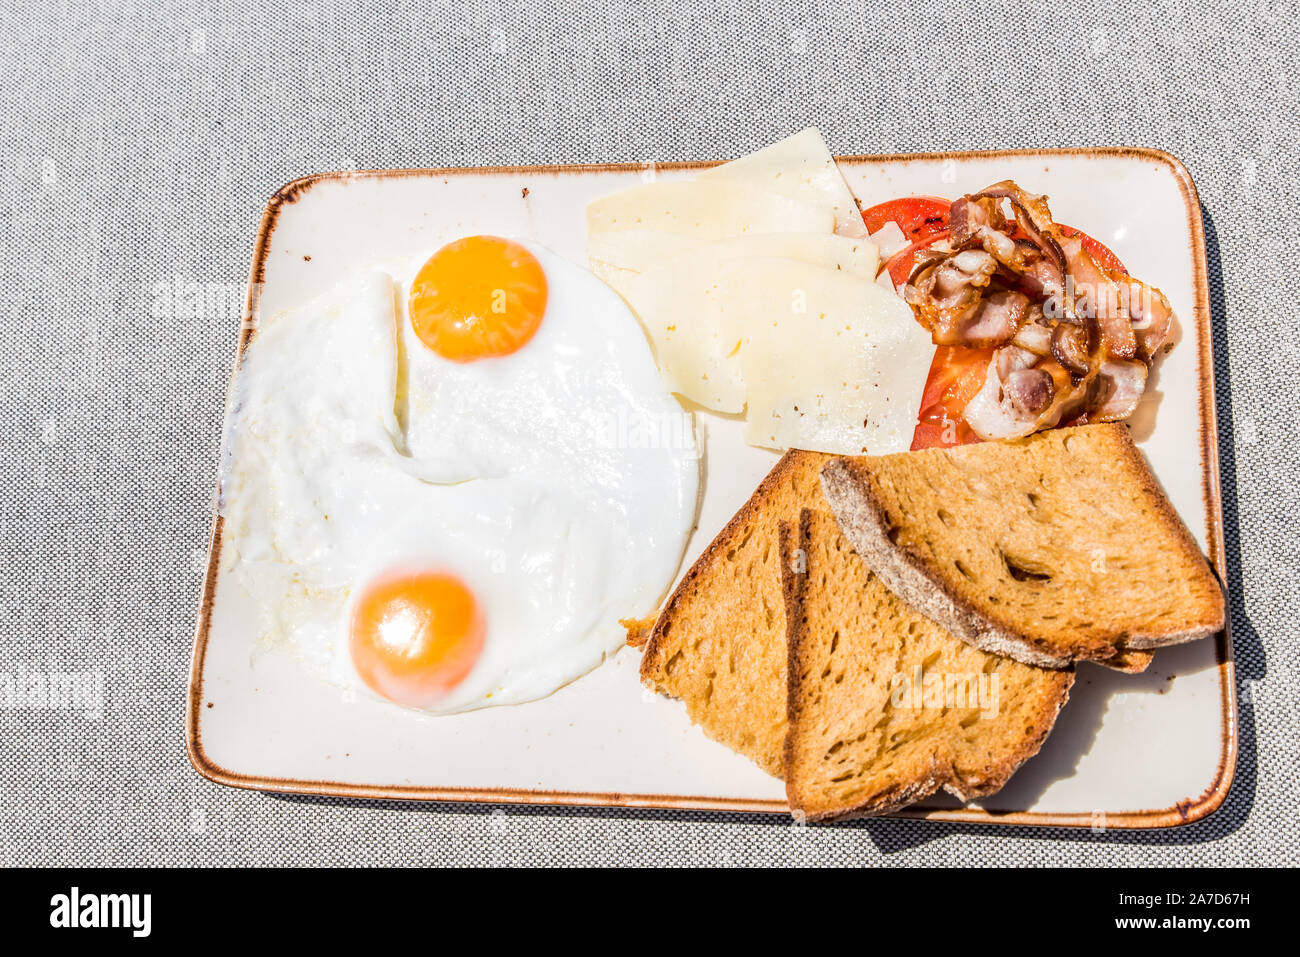 Une assiette de petit-déjeuner avec des œufs, tomate, pain, fromage et bacon, graviera vue supérieure Banque D'Images